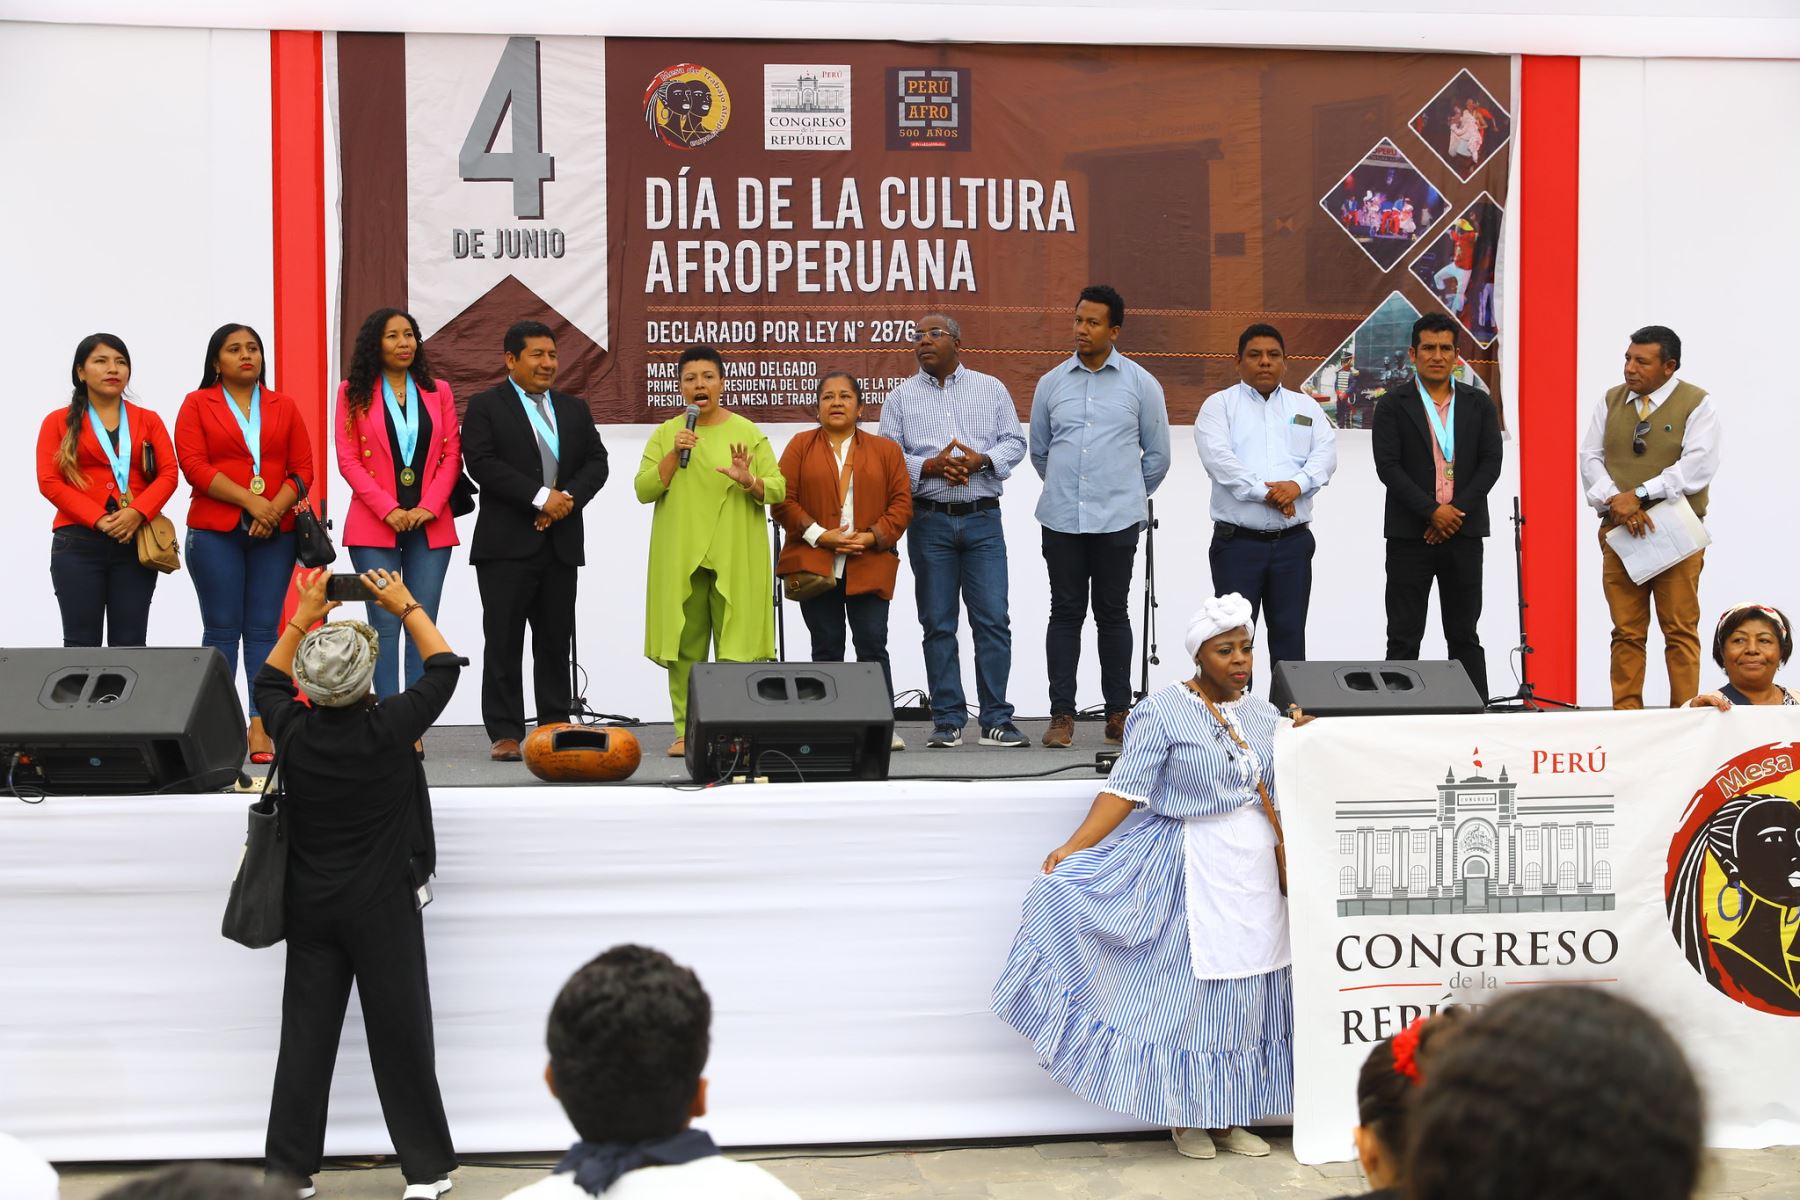 Primera vicepresidenta del Congreso de la República,  Martha Moyano Delgado participa del pasacalle y celebración por el día de la cultura afroperuana.
Fotos: Congreso de la República